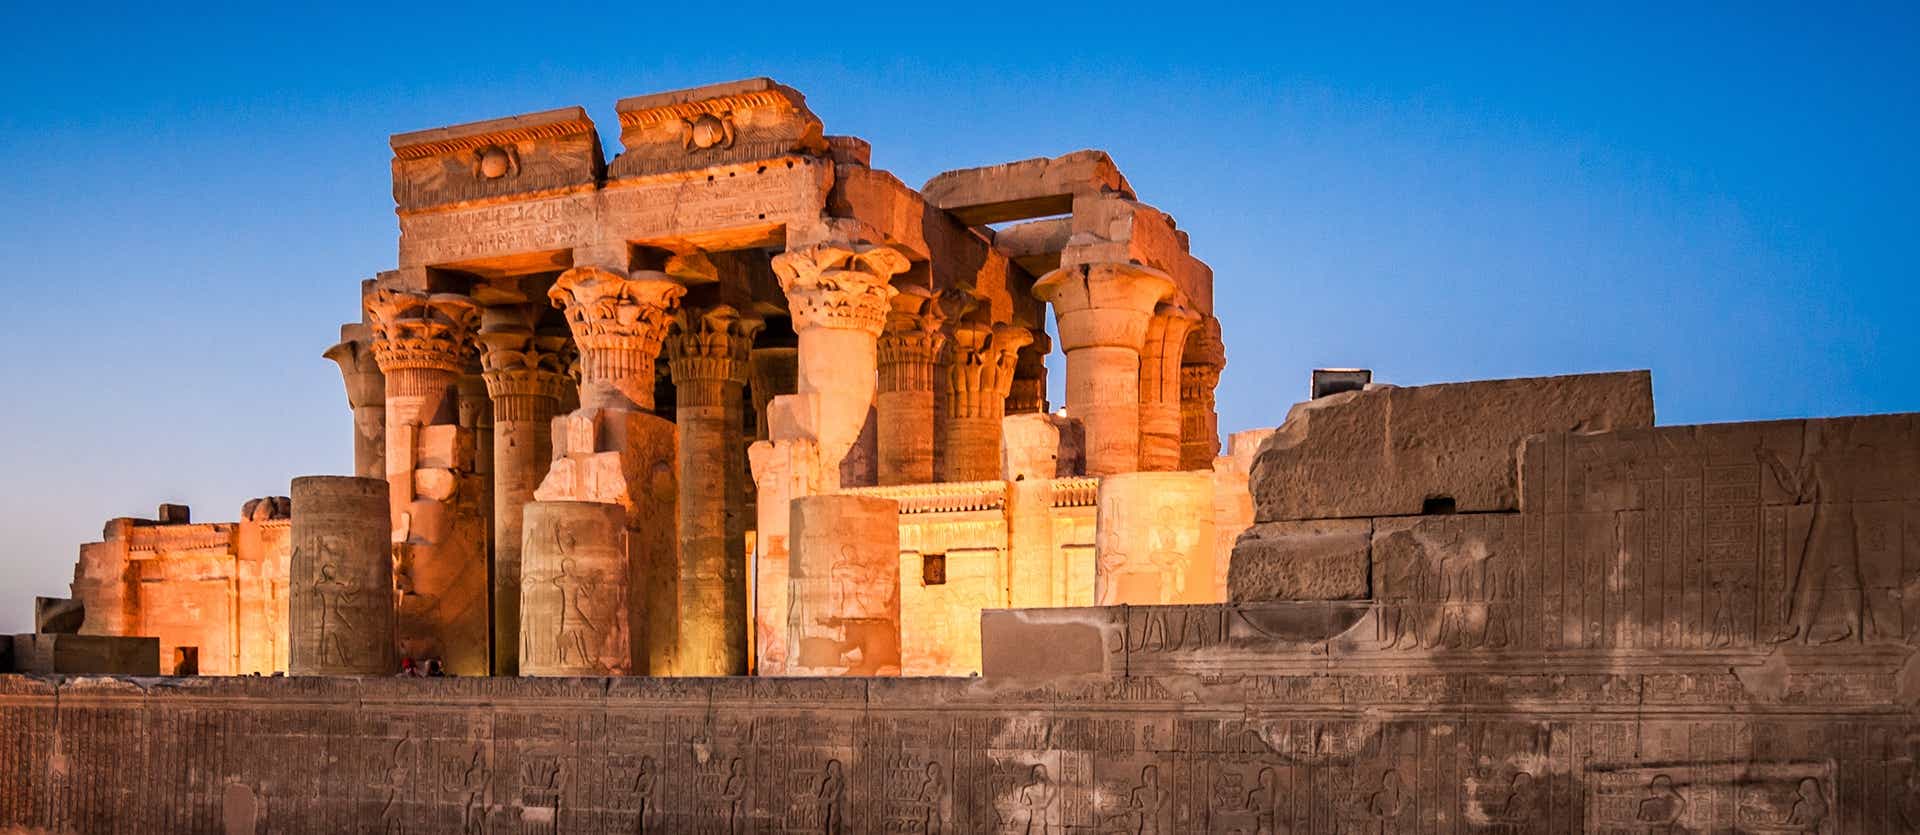 Templo de Kom Ombo <span class="iconos separador"></span> Egipto